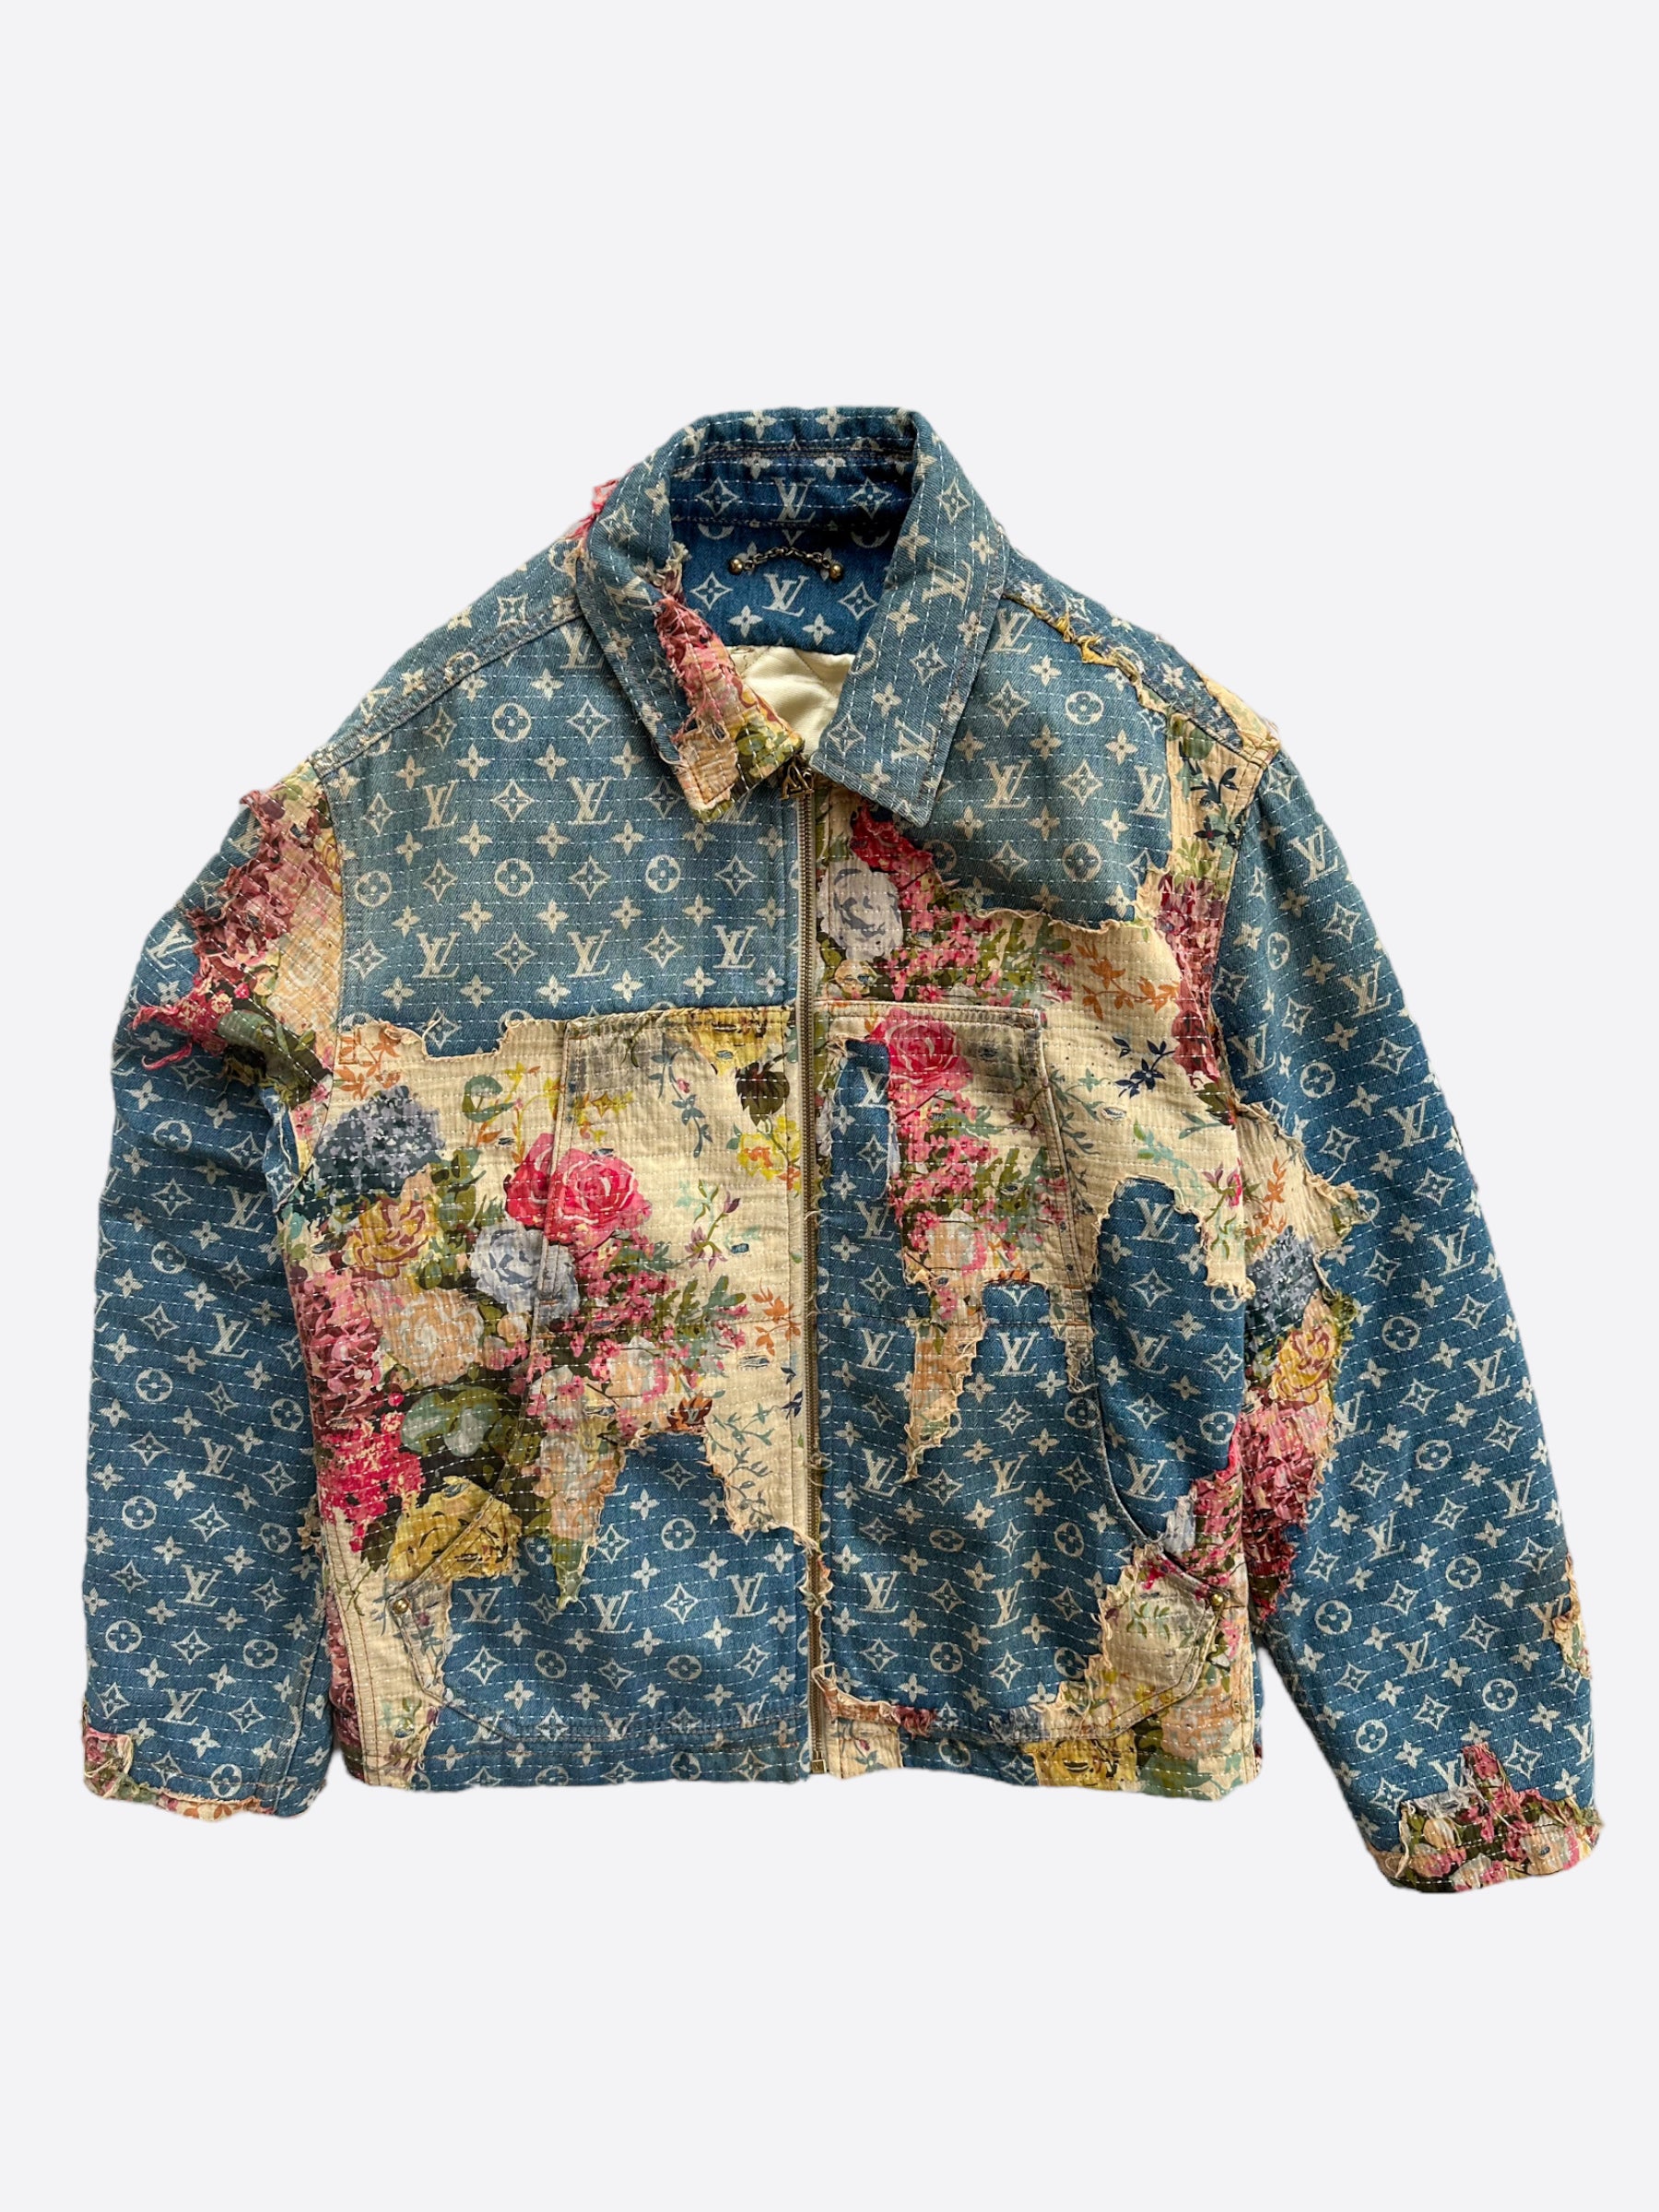 Louis Vuitton Floral Coats, Jackets & Vests for Women for sale